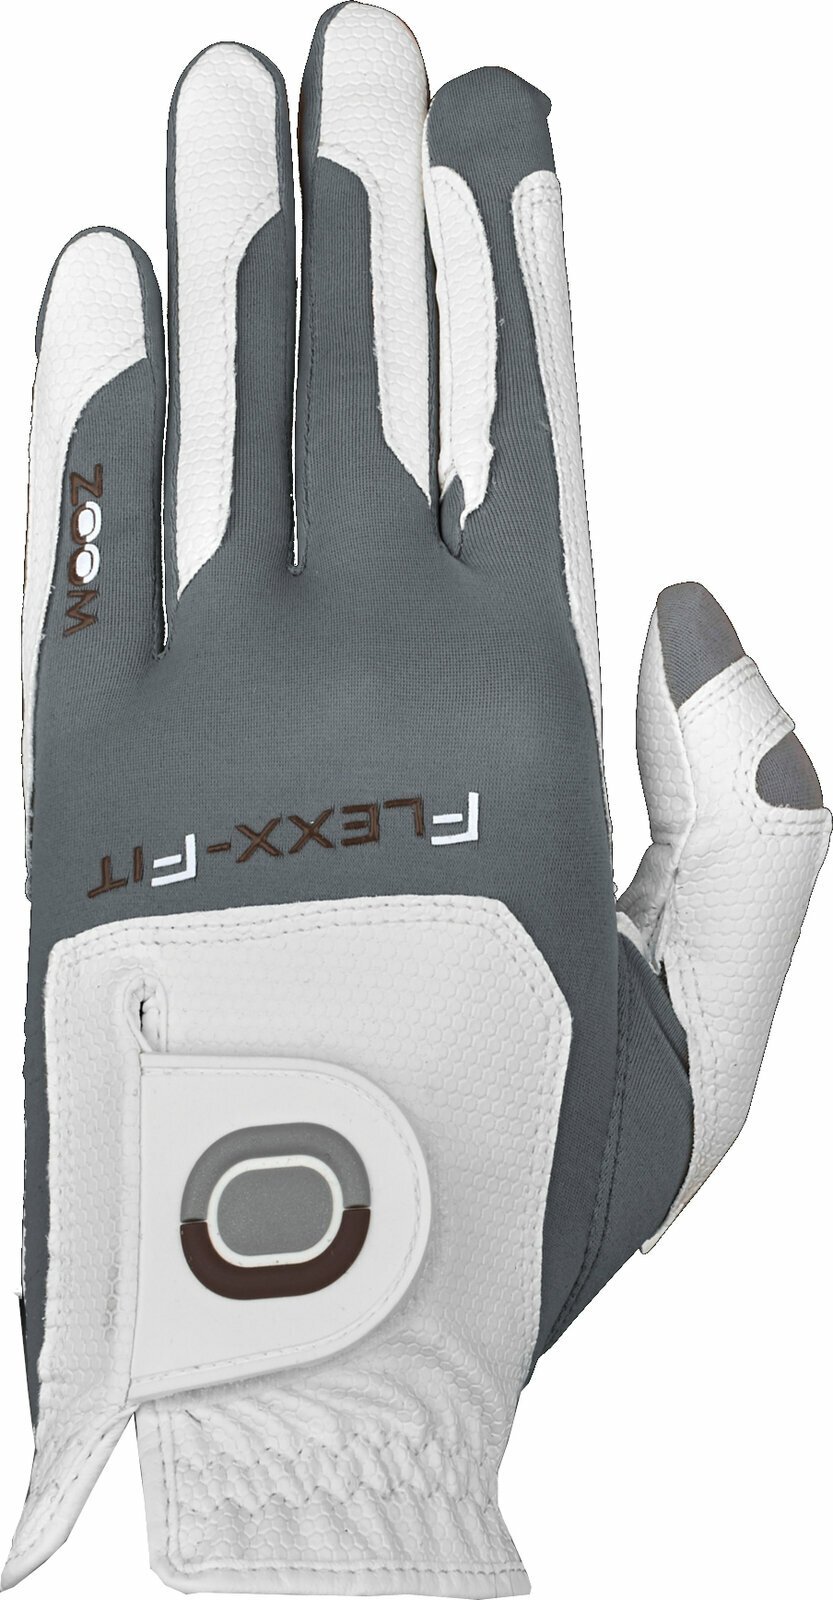 Rukavice Zoom Gloves Weather Mens Golf Glove White/Silver RH